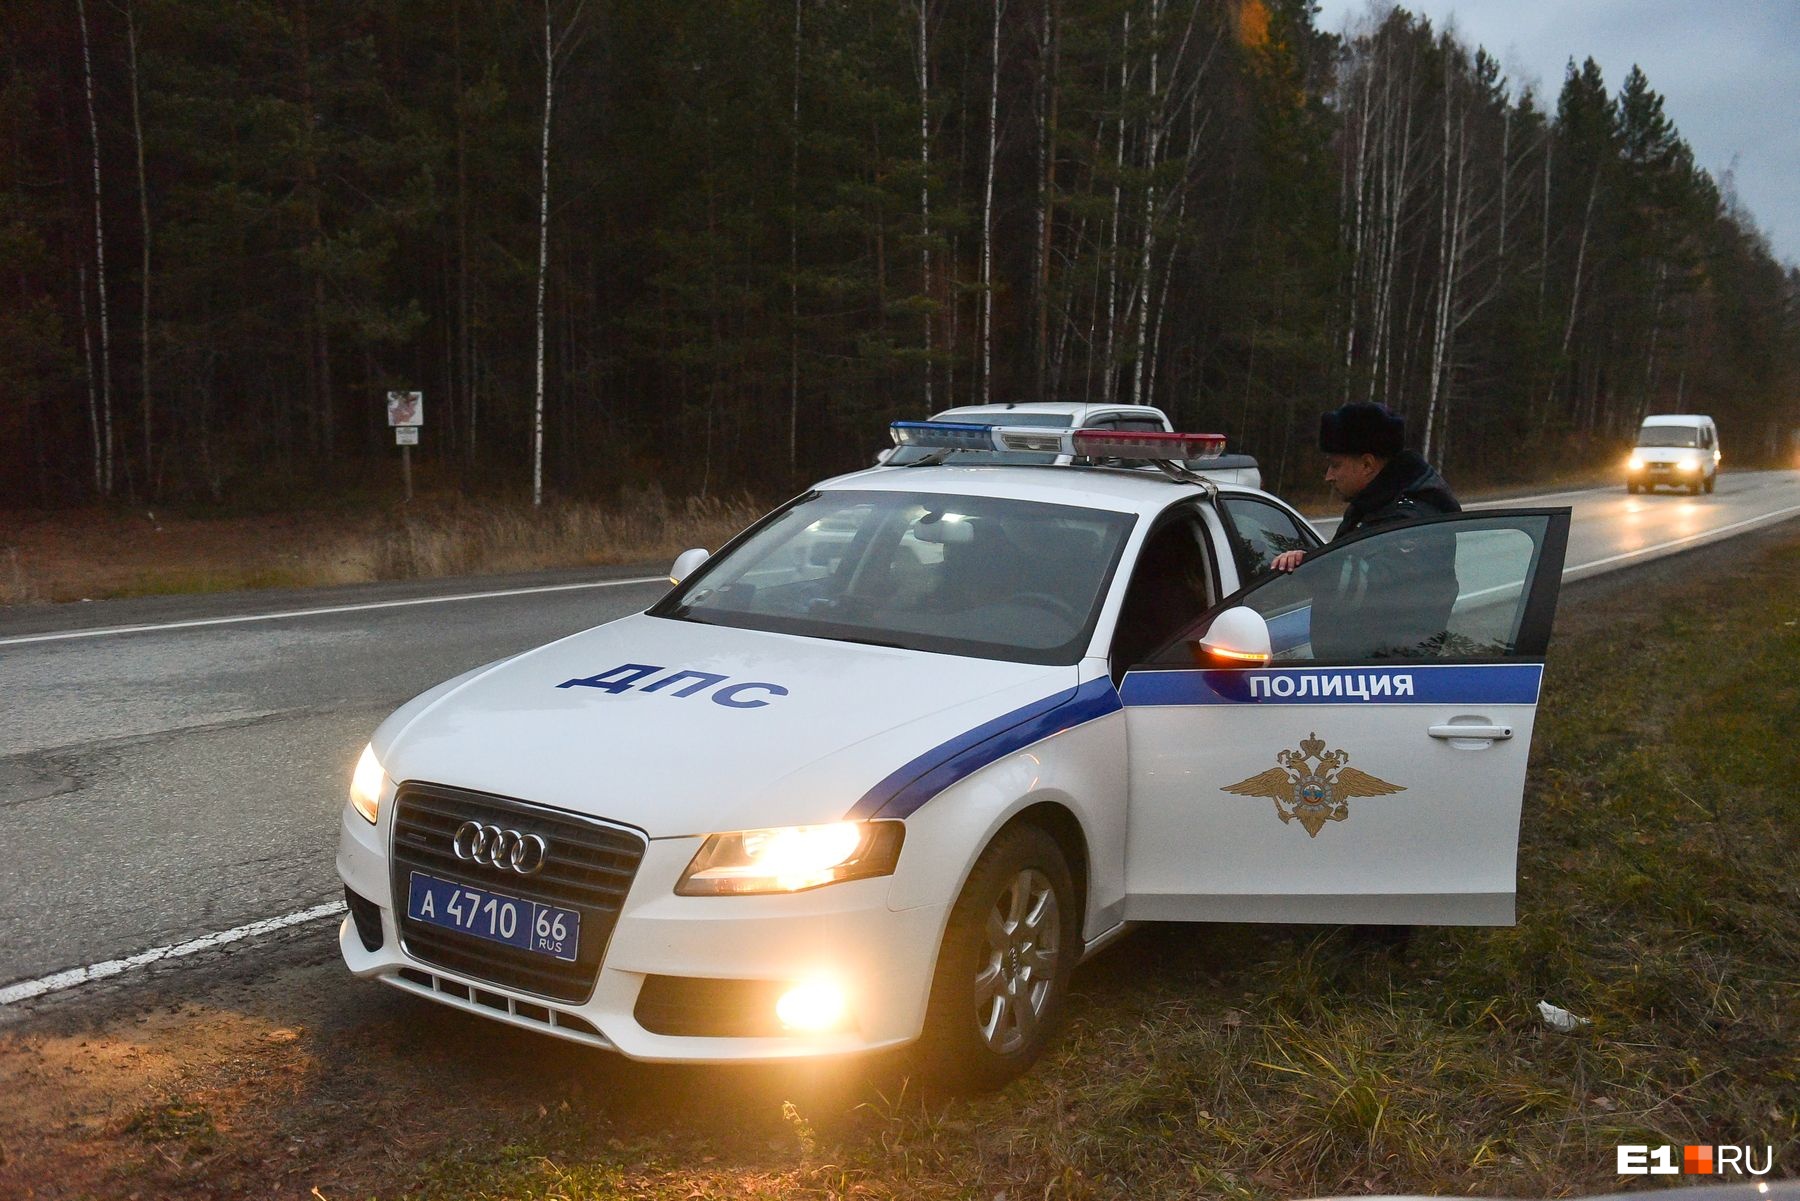 Сбил человека насмерть и скрылся: полиция ищет свидетелей ДТП на трассе Екатеринбург — Тюмень